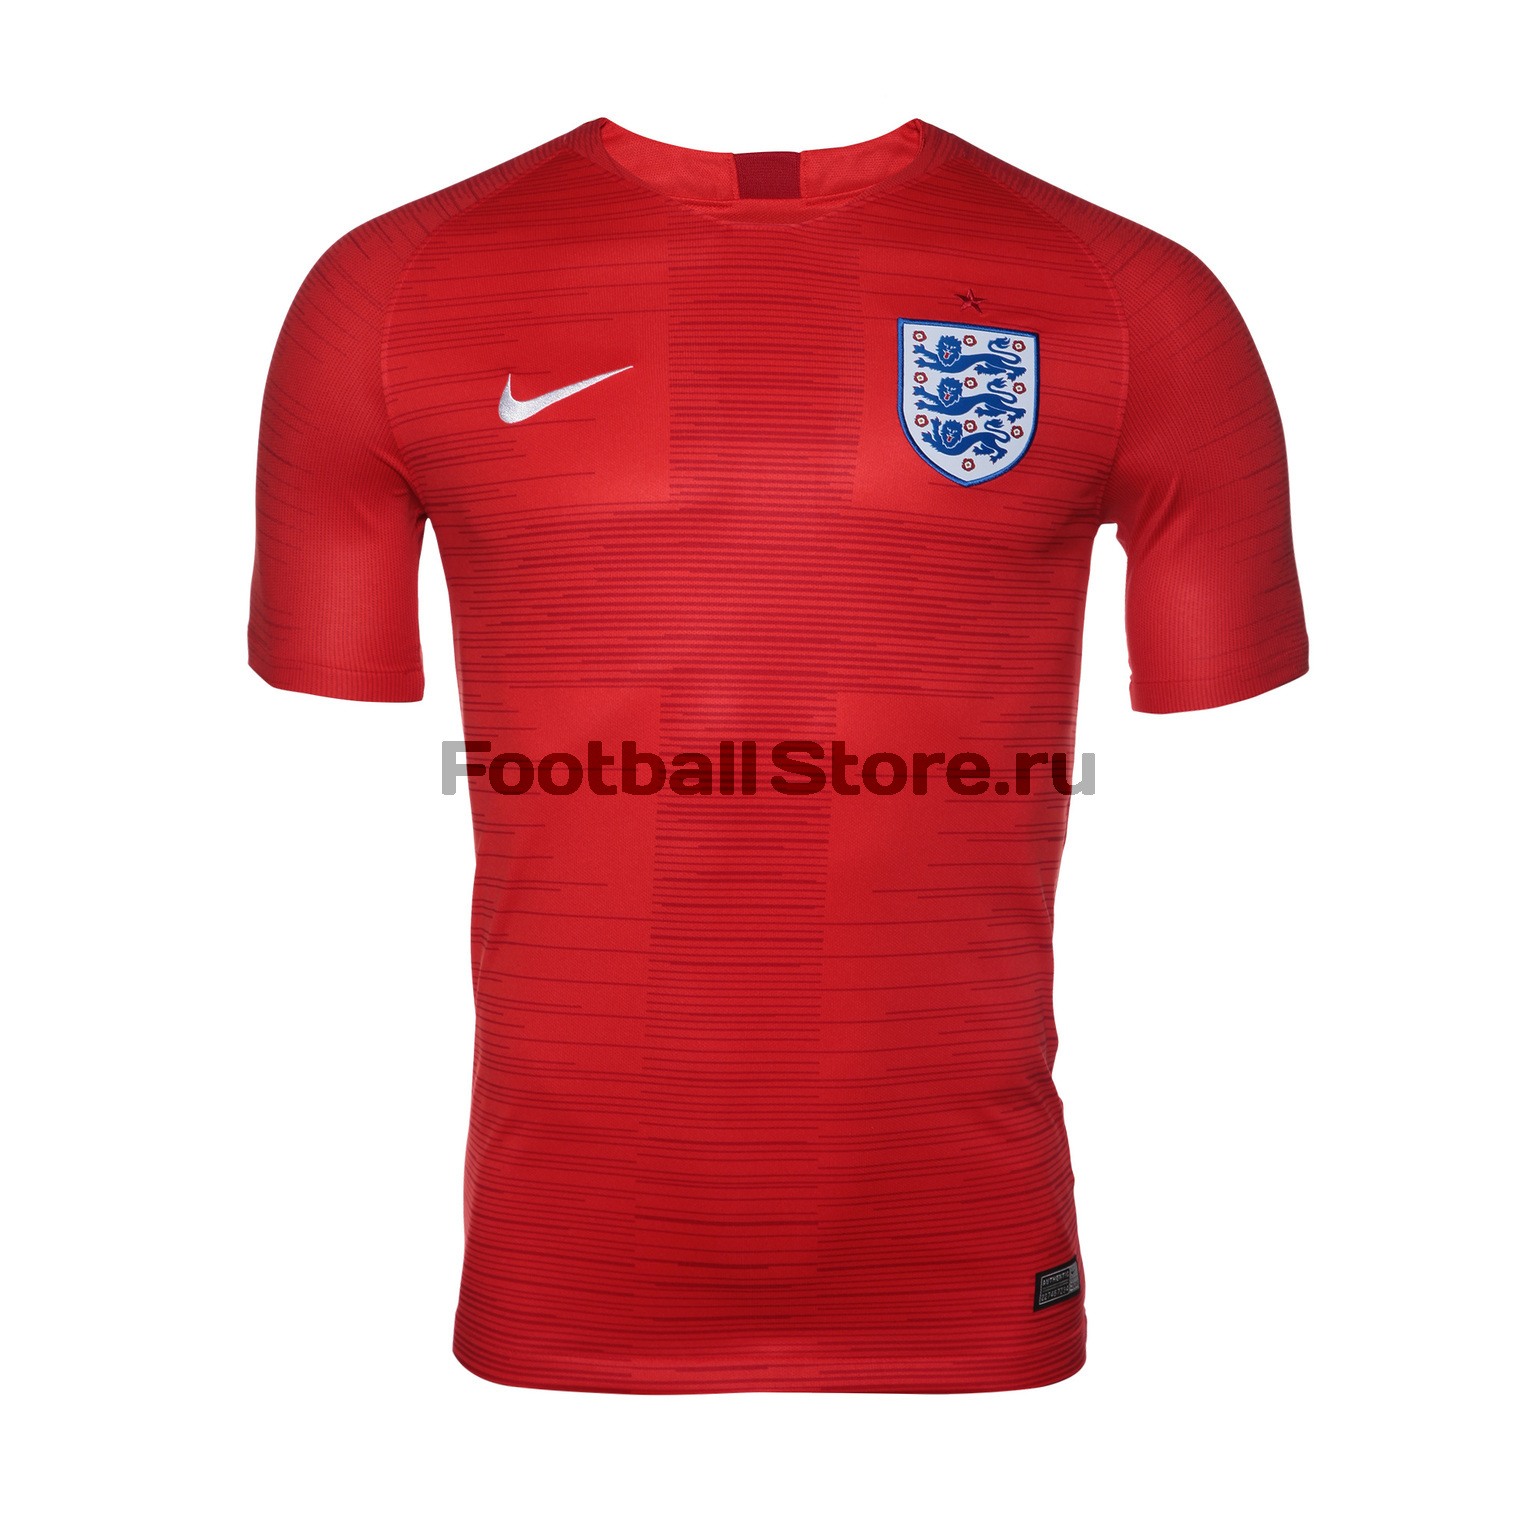 Игровая гостевая футболка Nike сборной Англии 893867-600